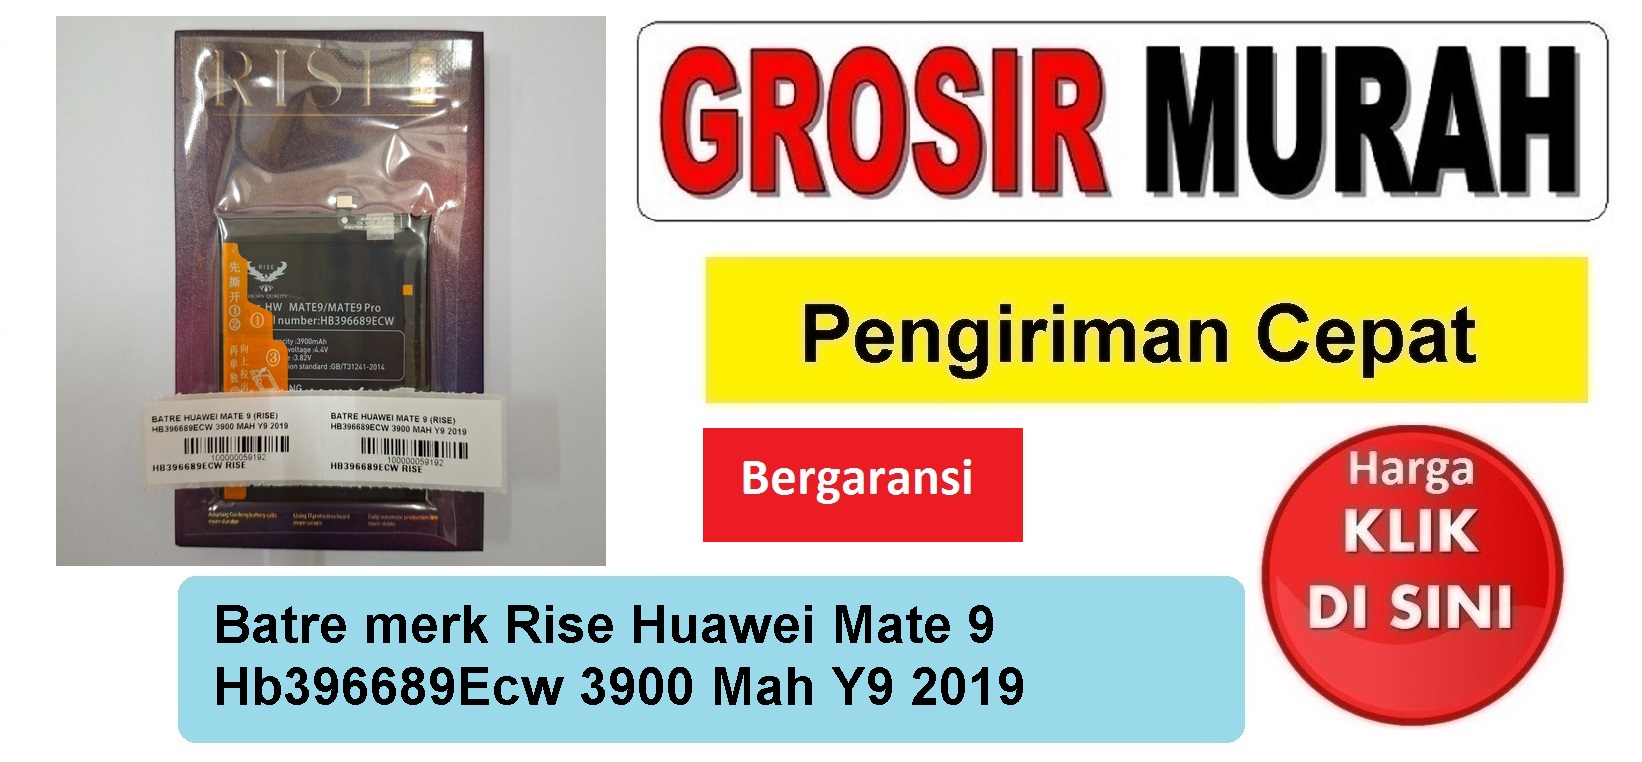 Batre merk Rise Huawei Mate 9 Hb396689Ecw 3900 Mah Y9 2019 Baterai Battery Bergaransi Batere